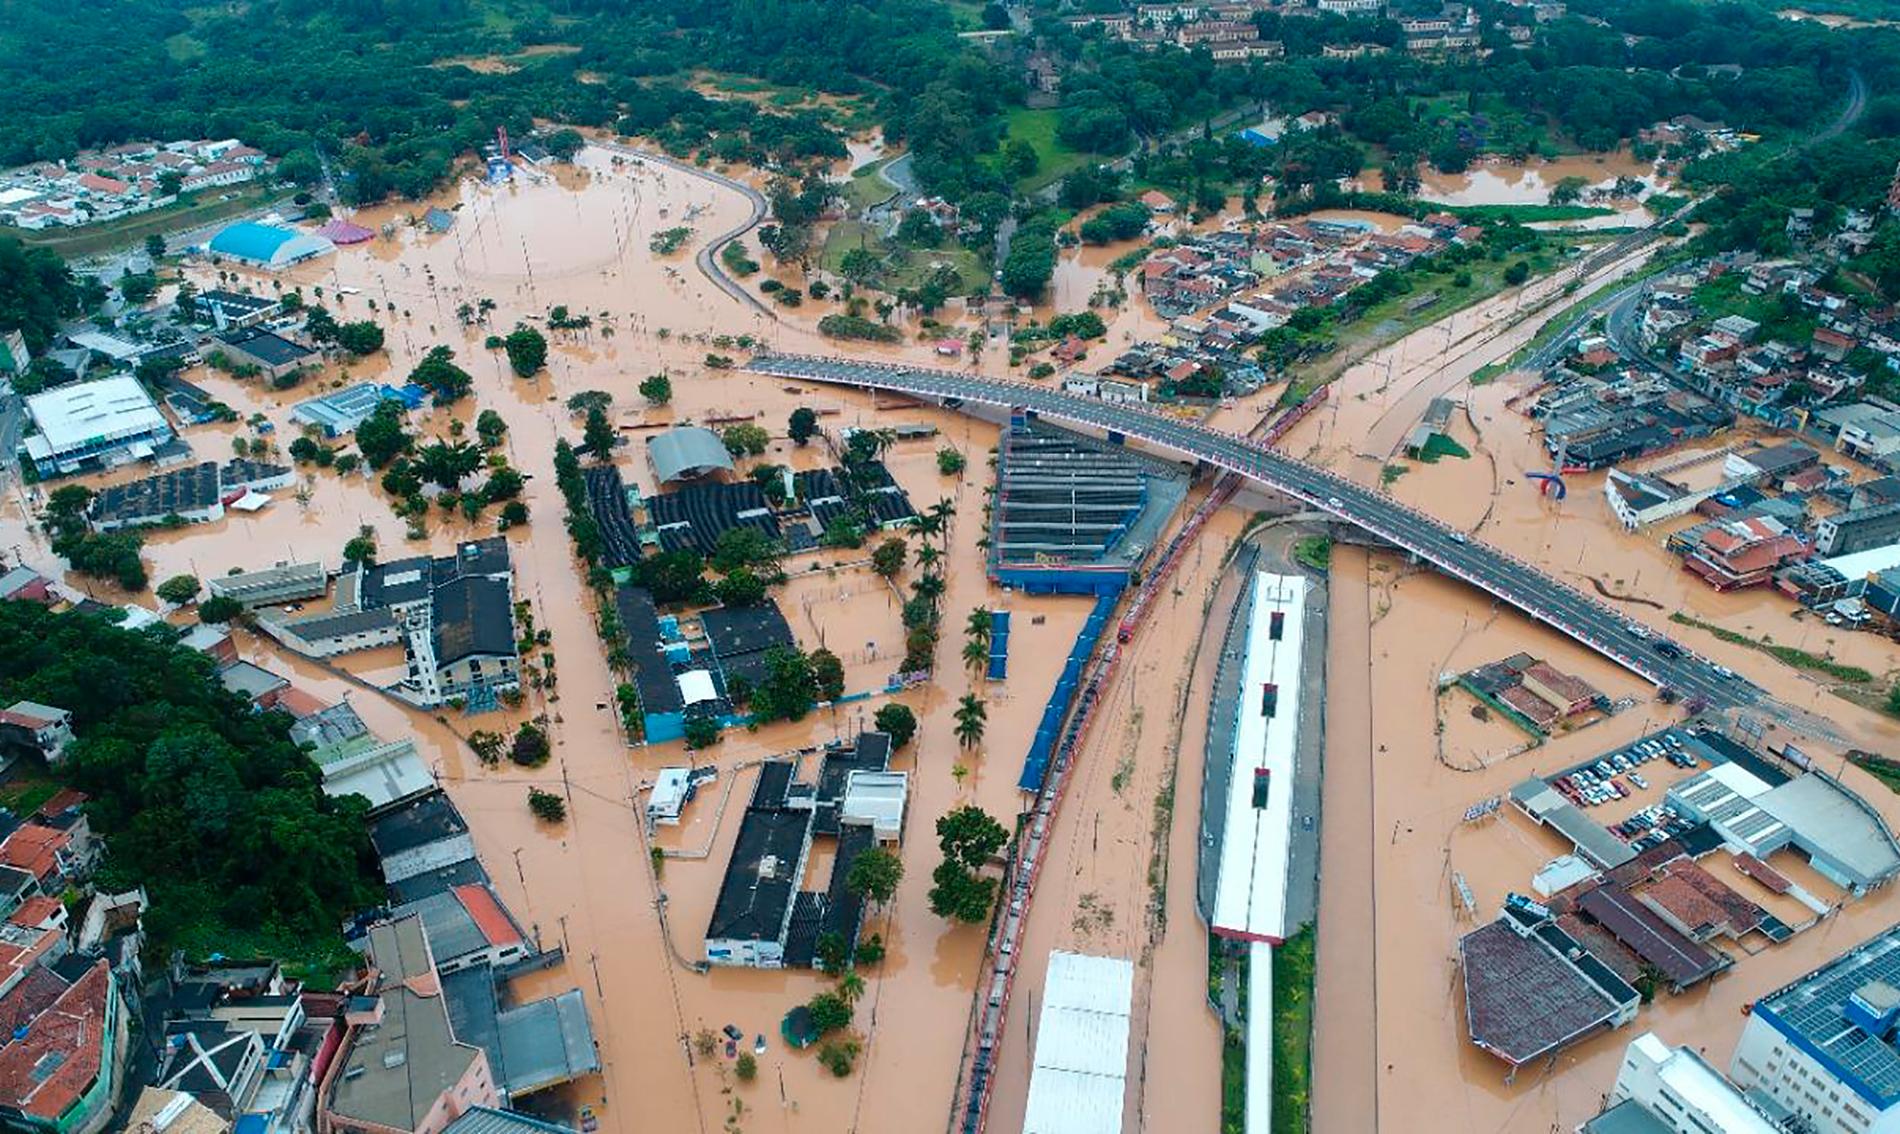 Staden Franco da Rocha, nordväst om São Paulo, som översvämmades under helgen.